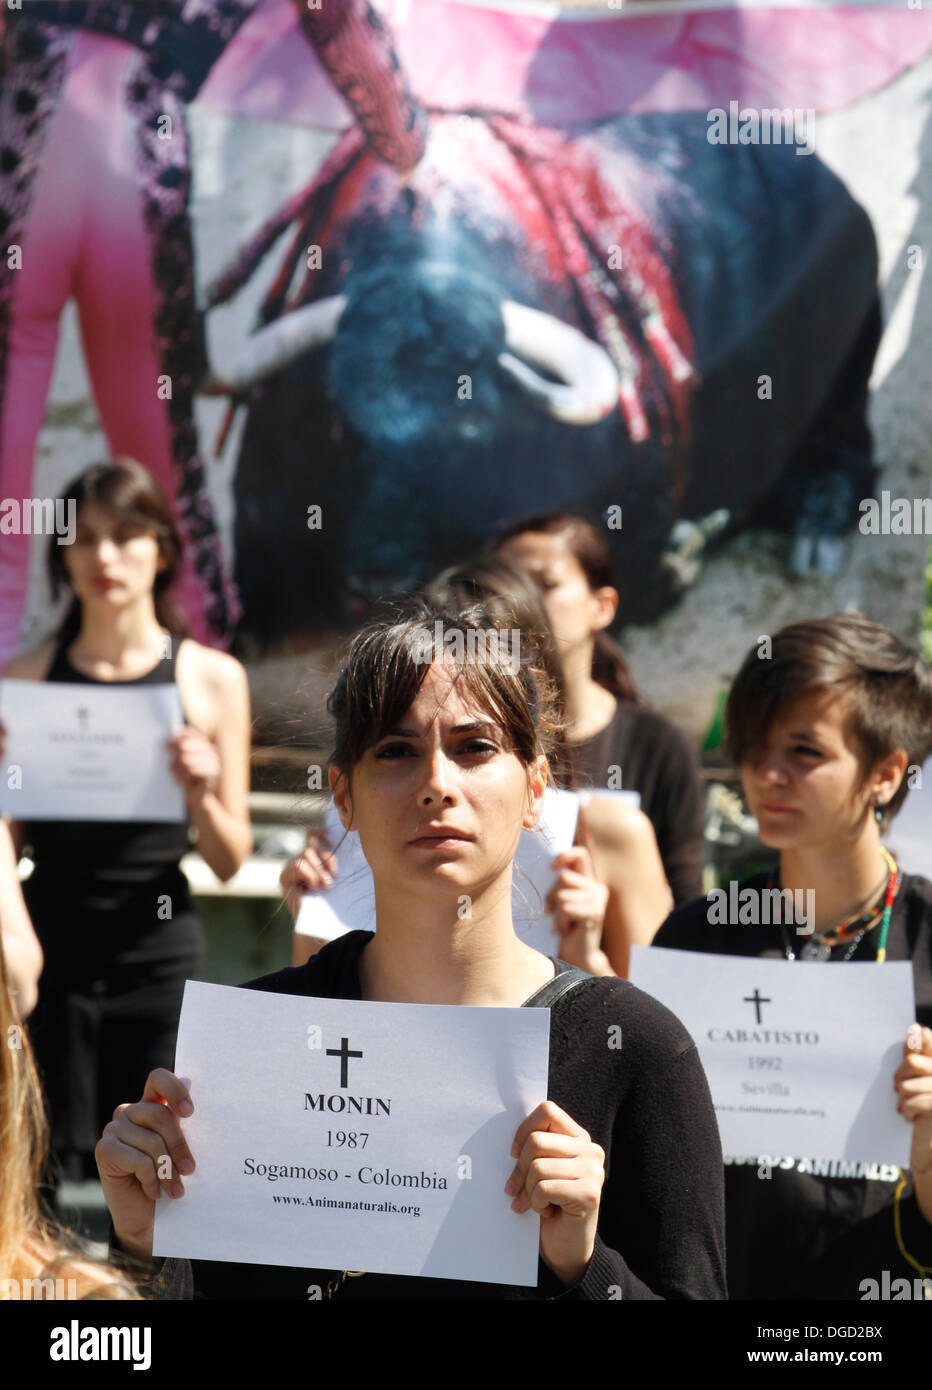 Gli attivisti contro le corride in Spagna sono visti durante una dimostrazione in Palma de Mallorca. Foto Stock